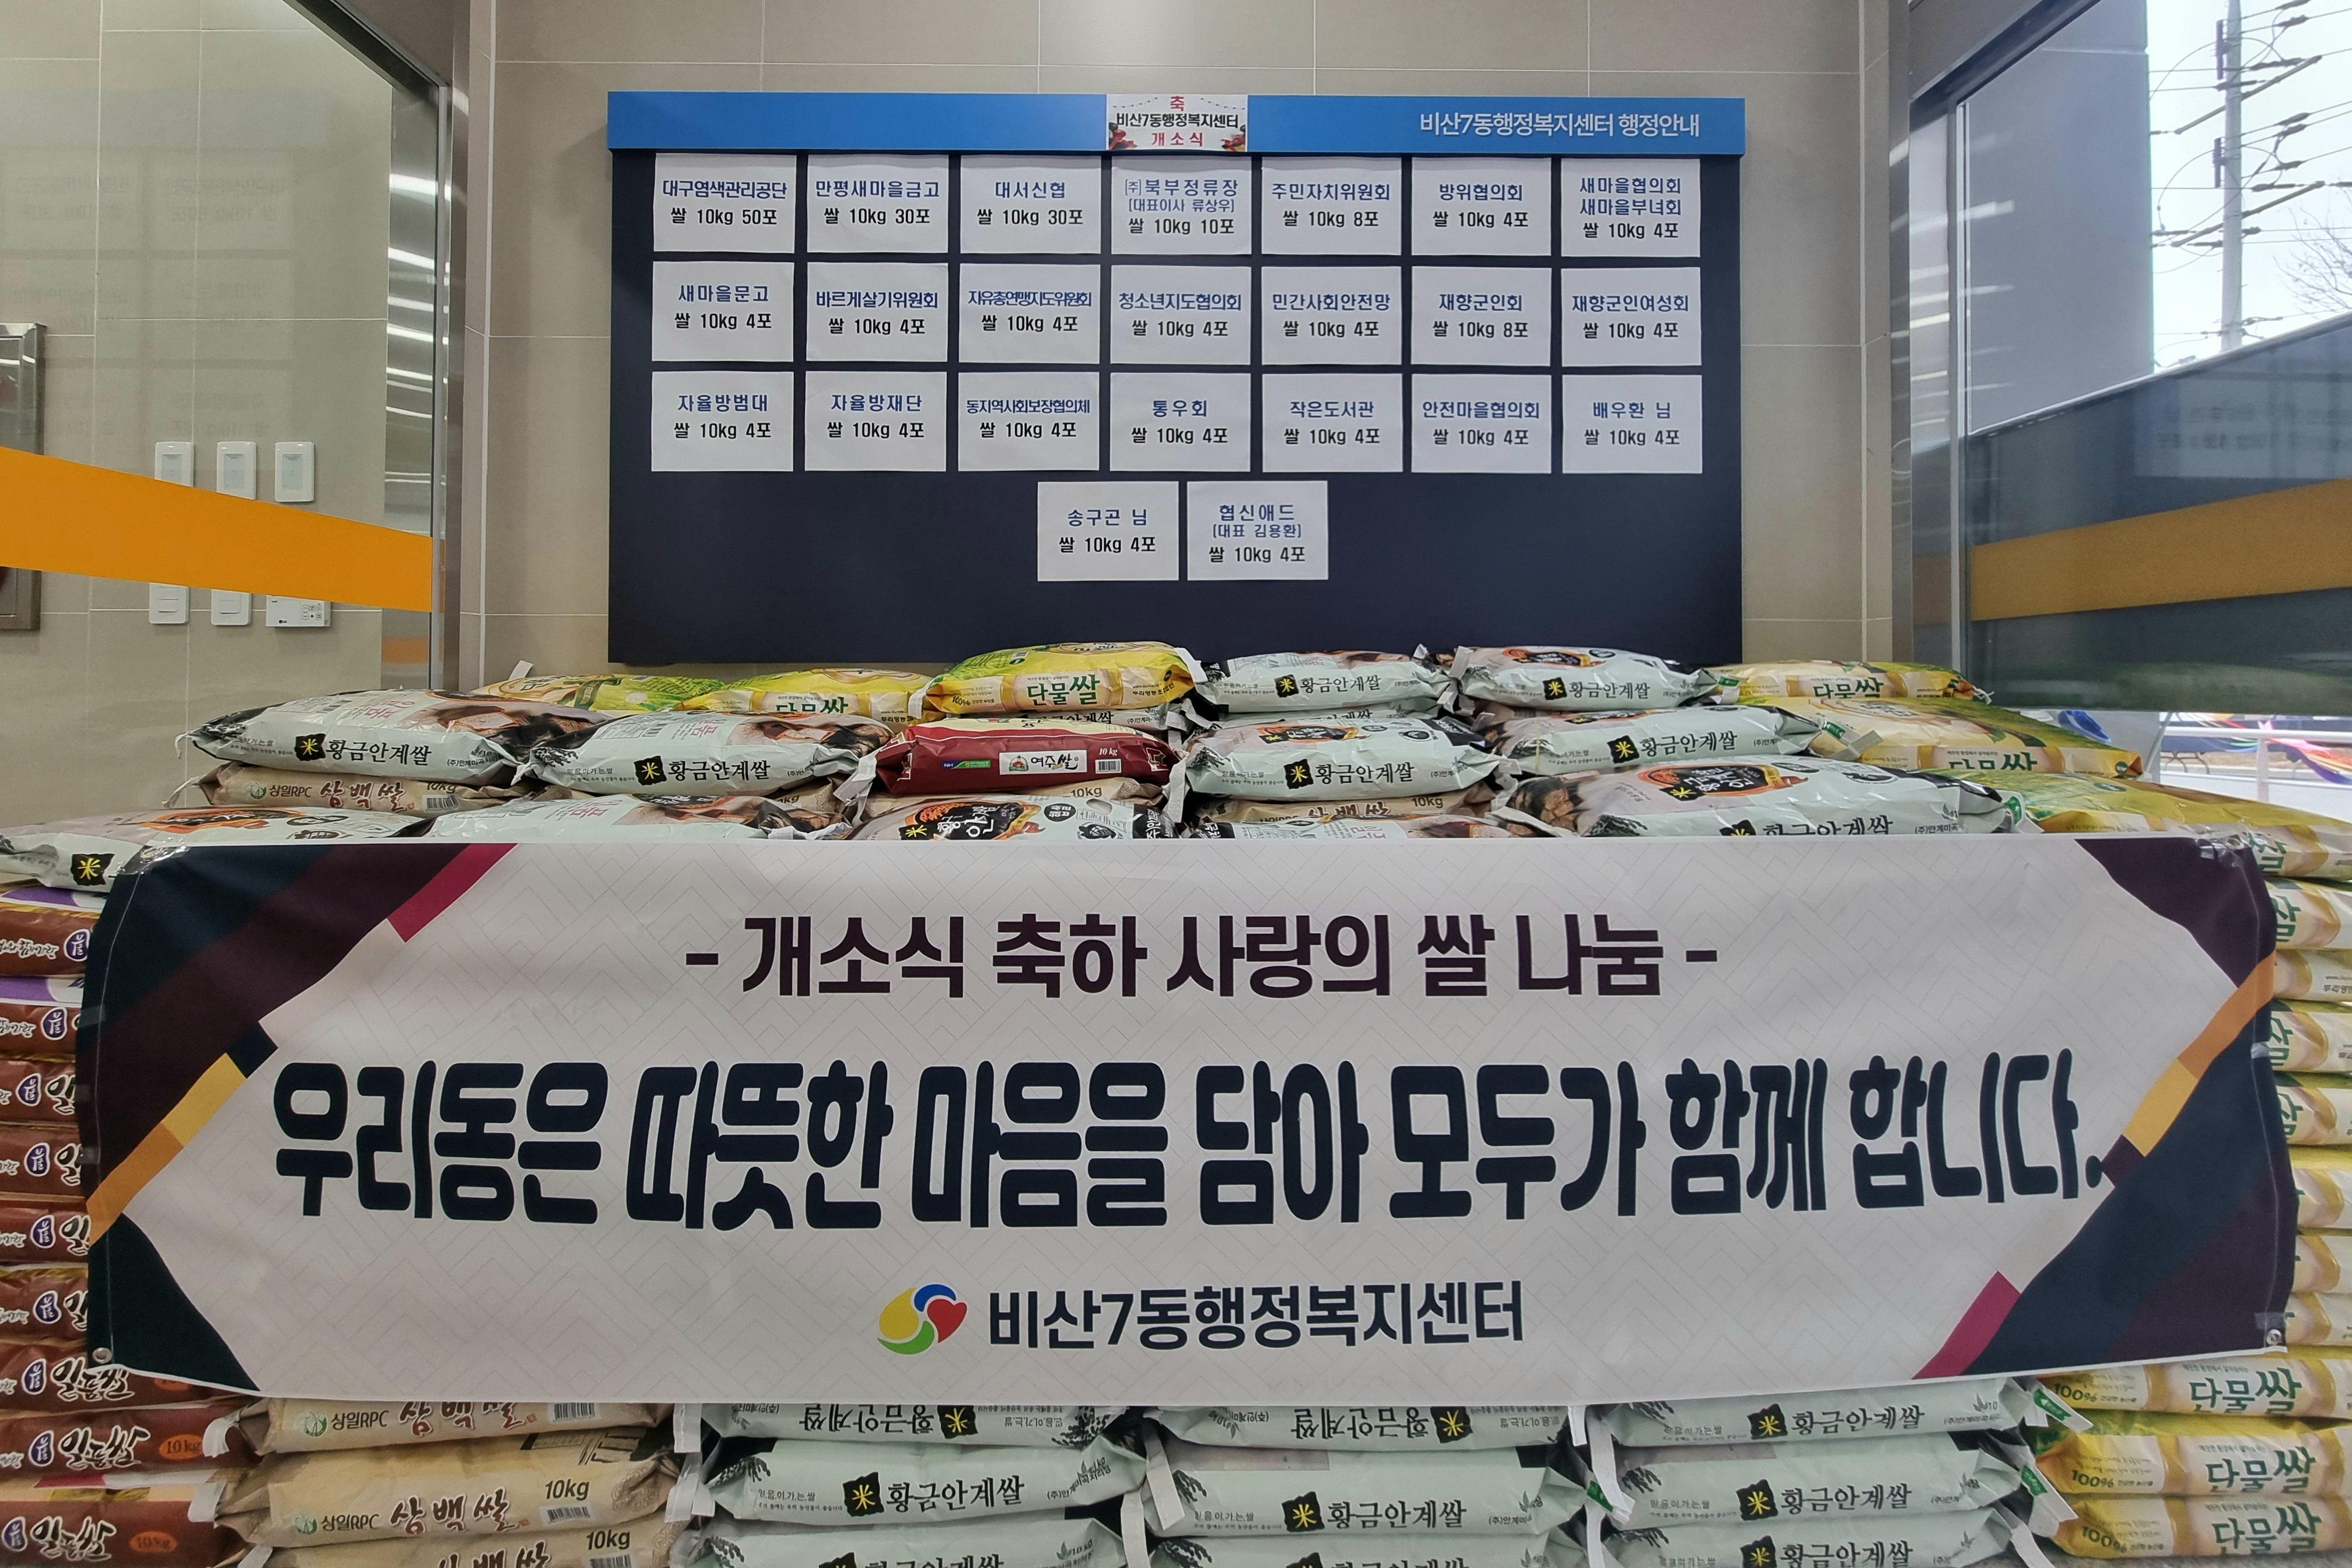 [비산7동] 행정복지센터 개소식 축하 사랑의 쌀 나눔 1